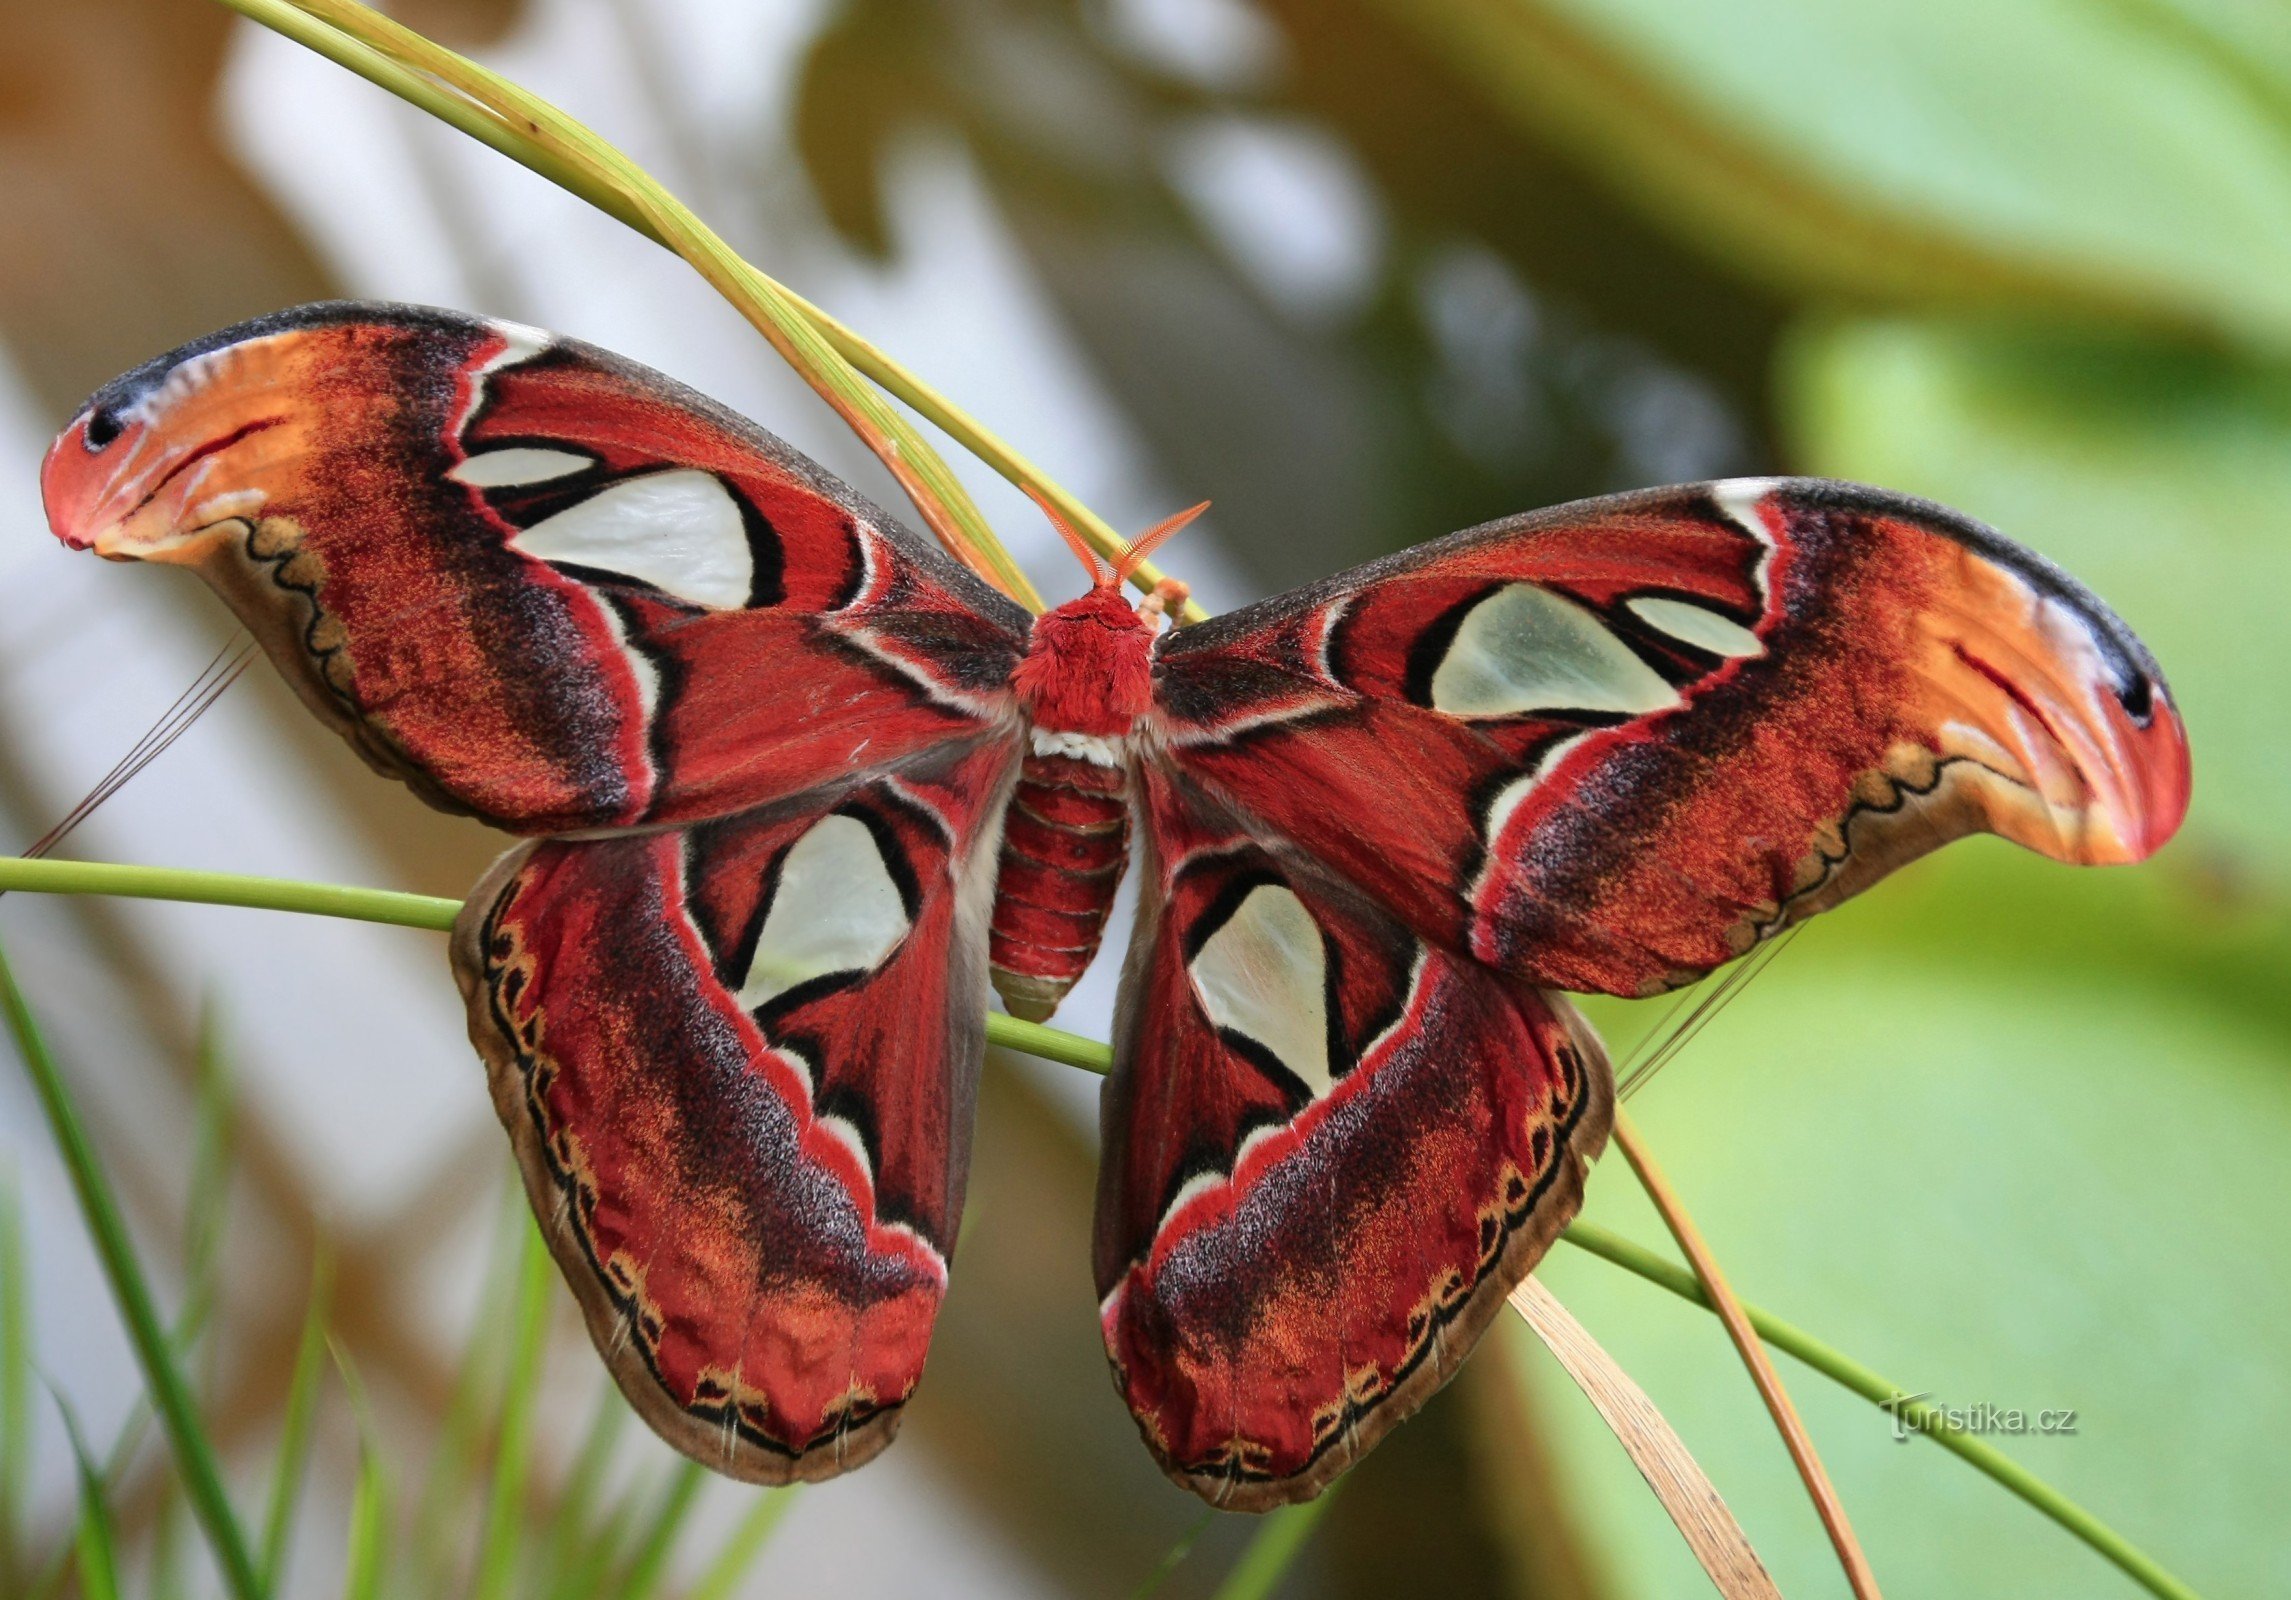 Ogród Botaniczny Brno - Atlas Attacus - największy motyl na świecie 12.9.2014